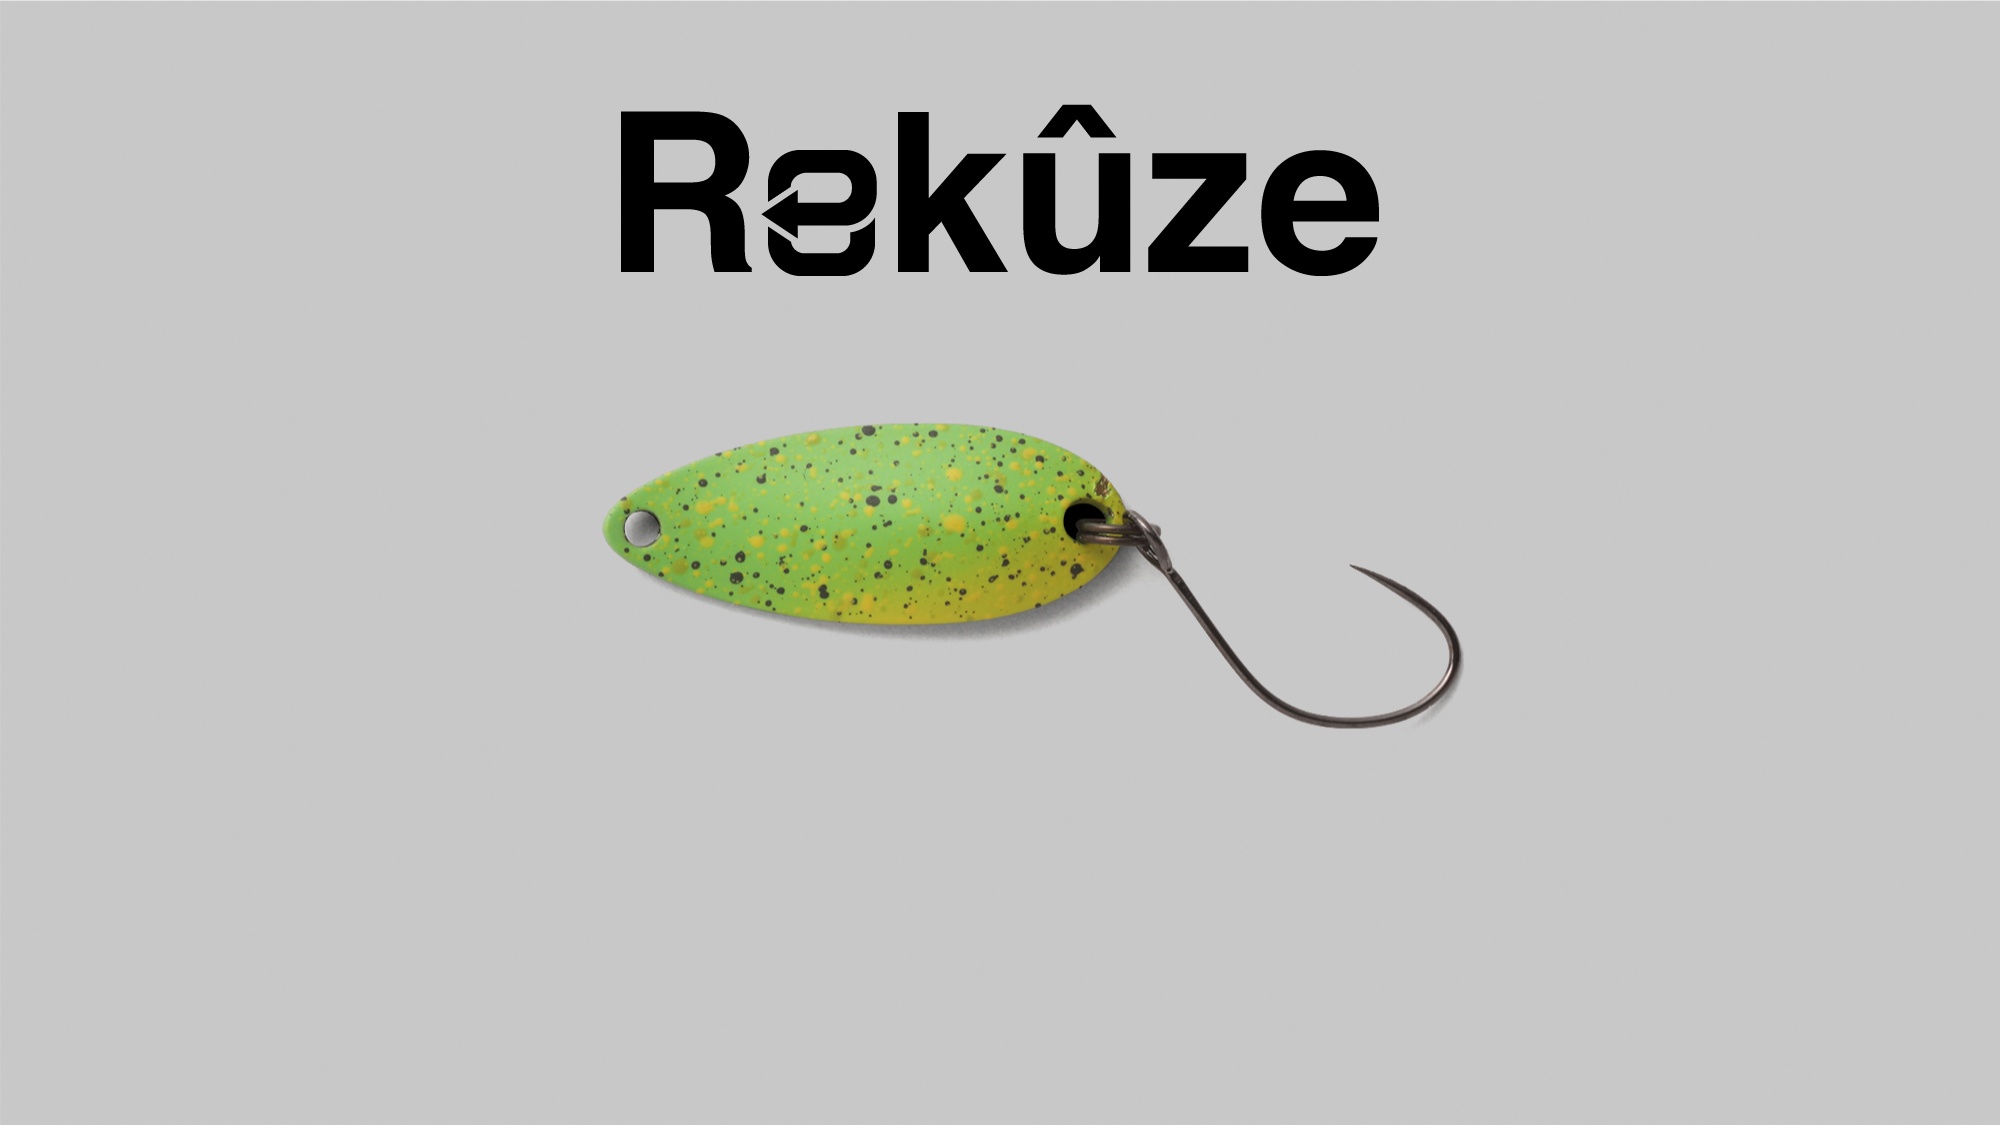  Rekuze/リクーゼ